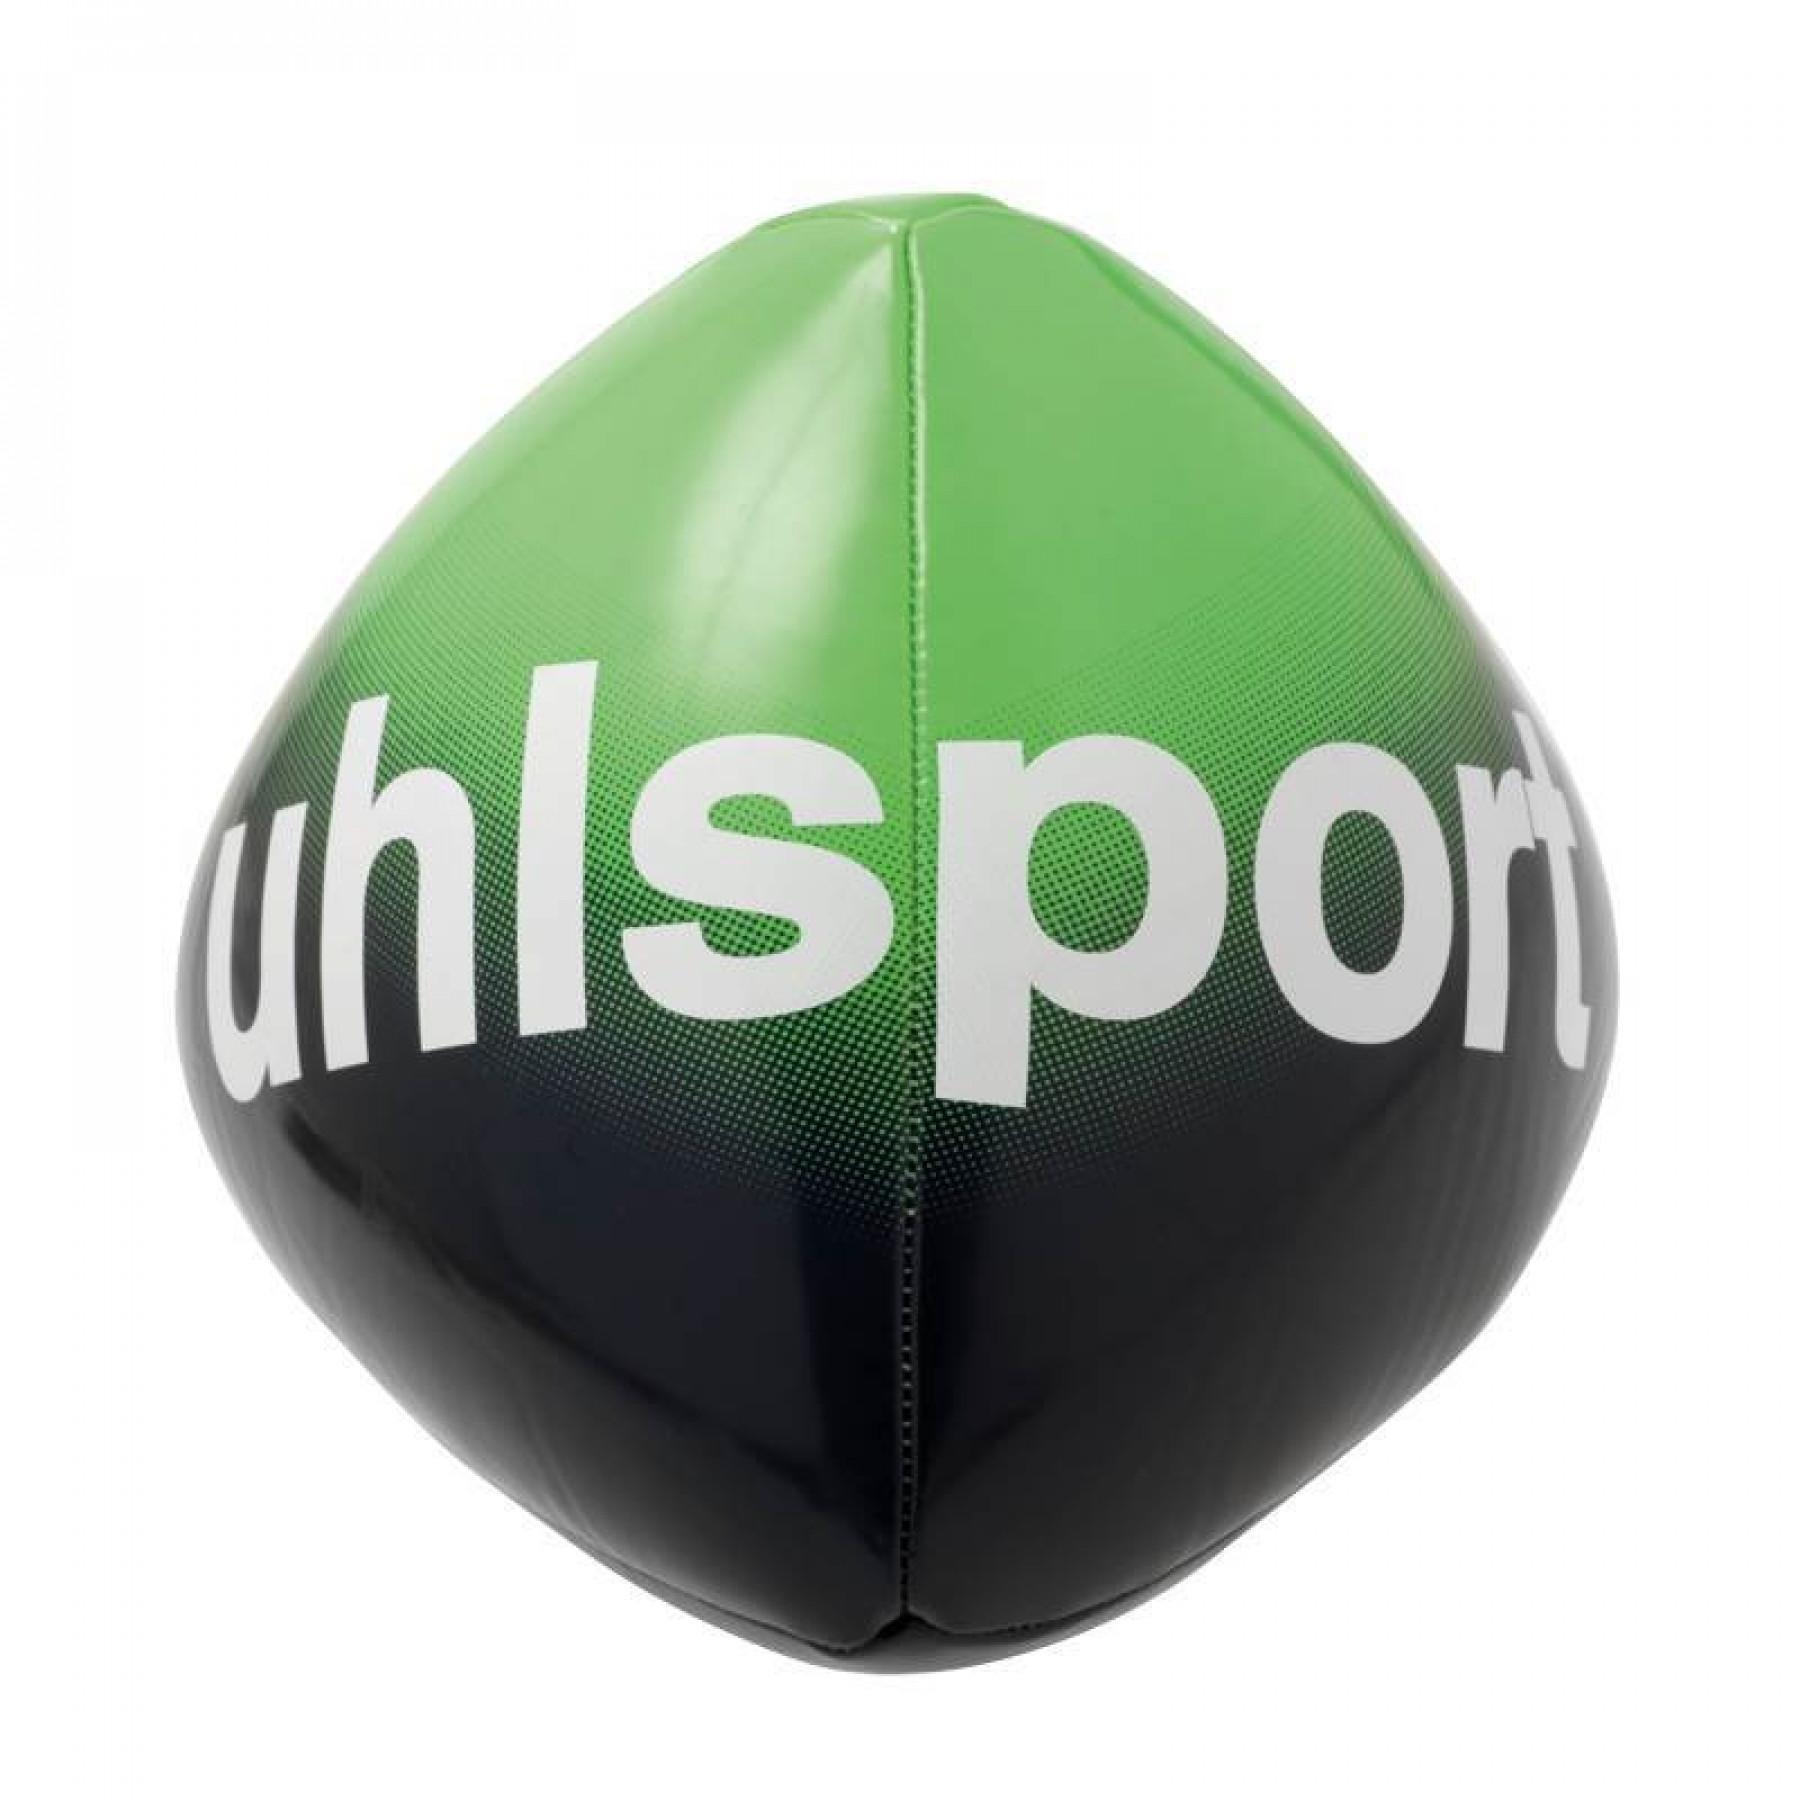 BALLON DE FOOTBALL REFLEX BALL - UHLSPORT 